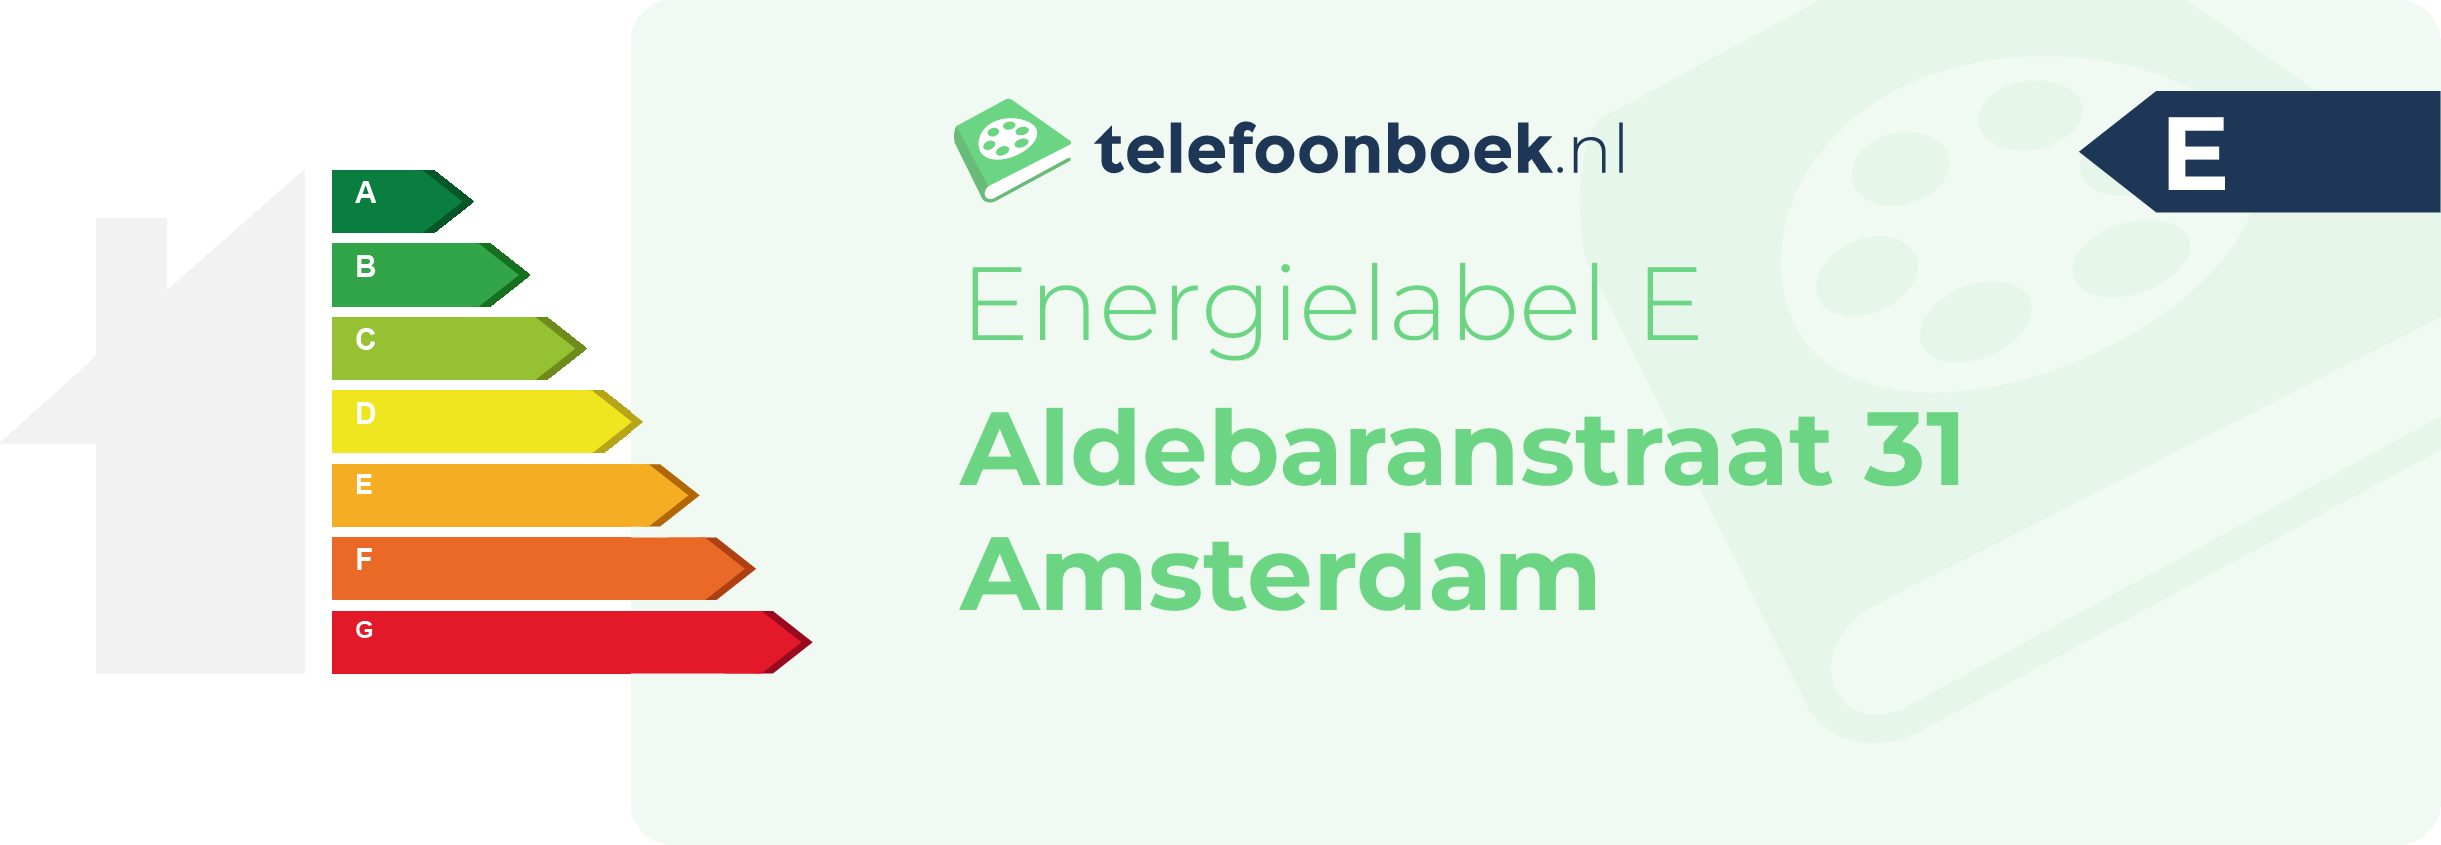 Energielabel Aldebaranstraat 31 Amsterdam